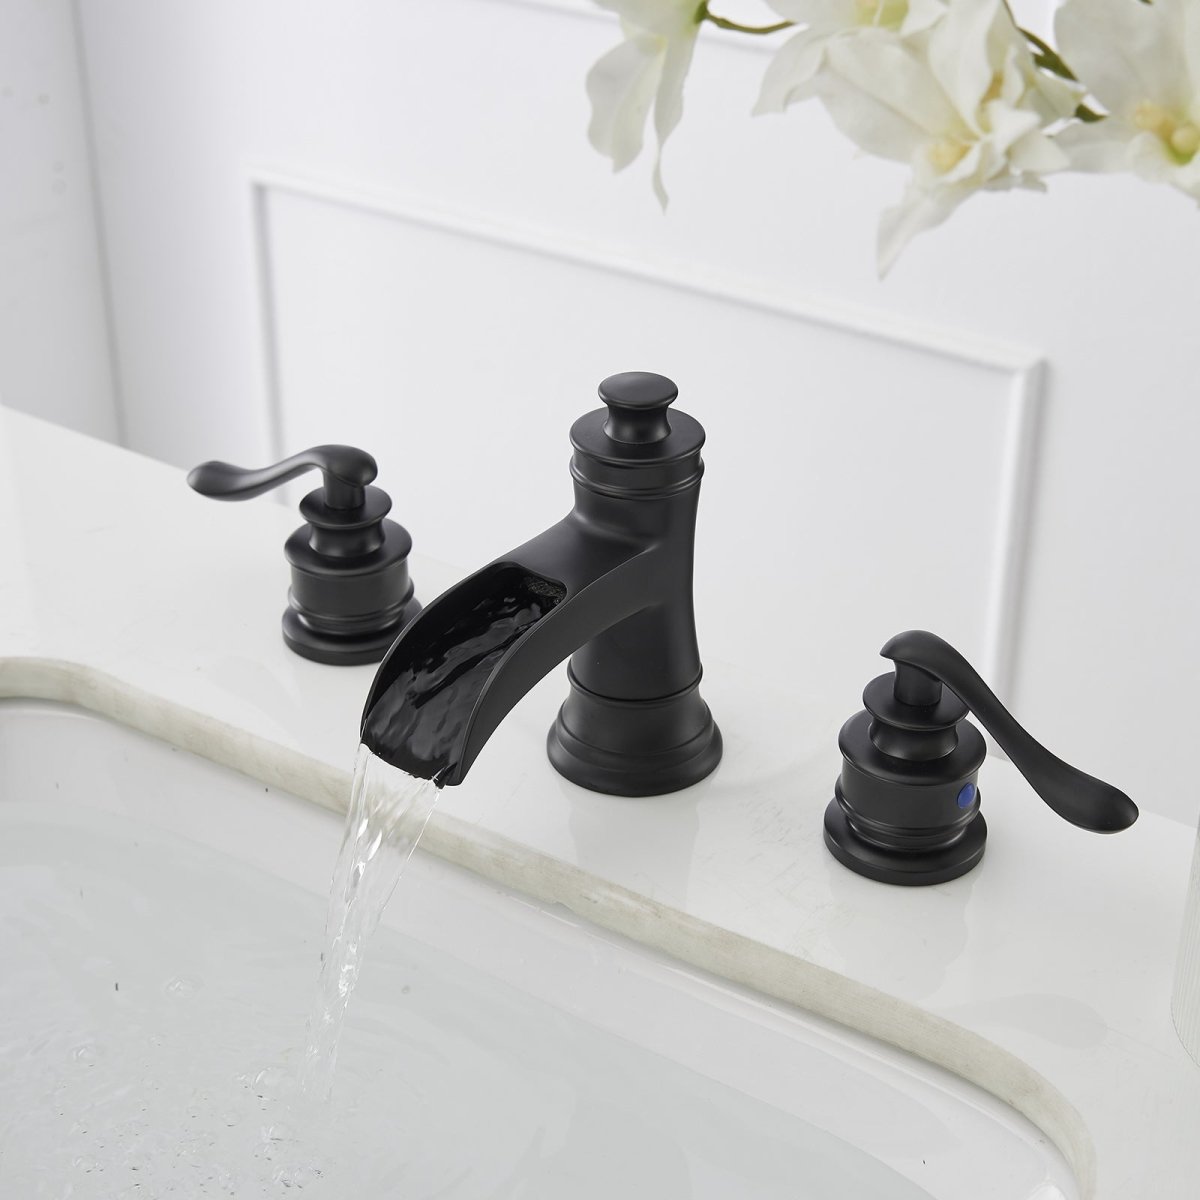 8 in Waterfall 2-Handle Bathroom Faucet Matte Black - buyfaucet.com